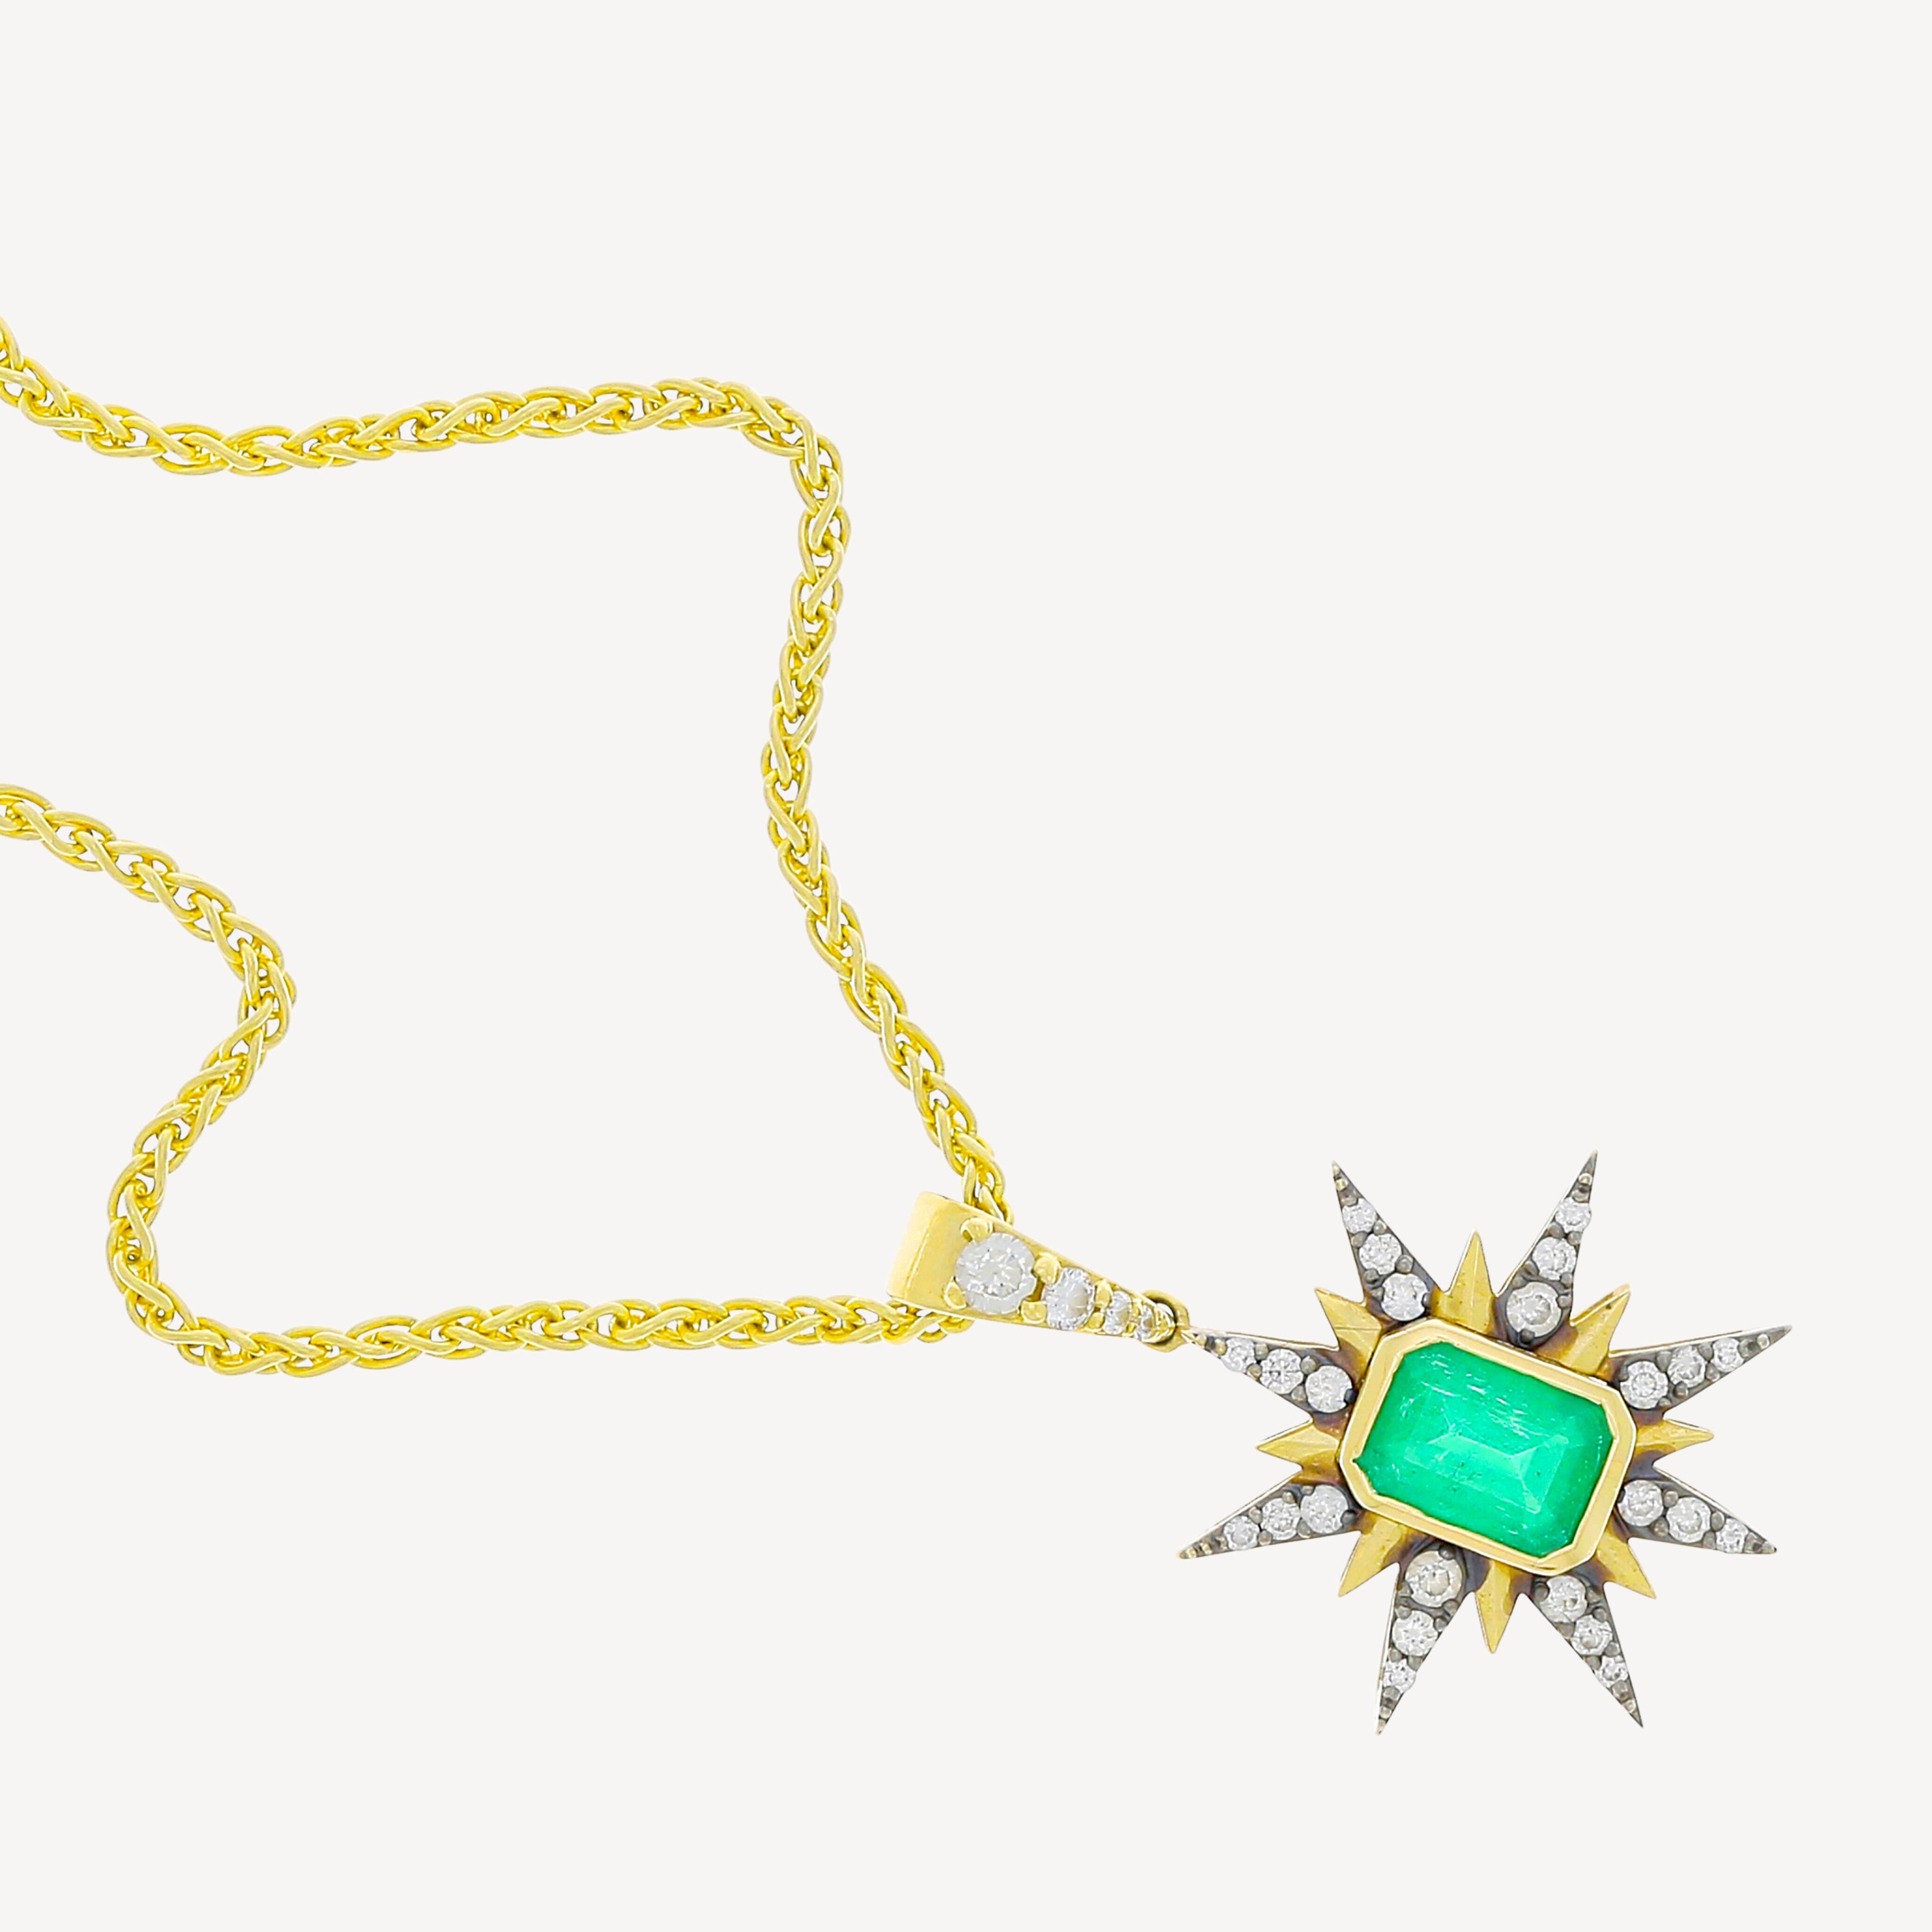 Starburst Charm Emerald Necklace